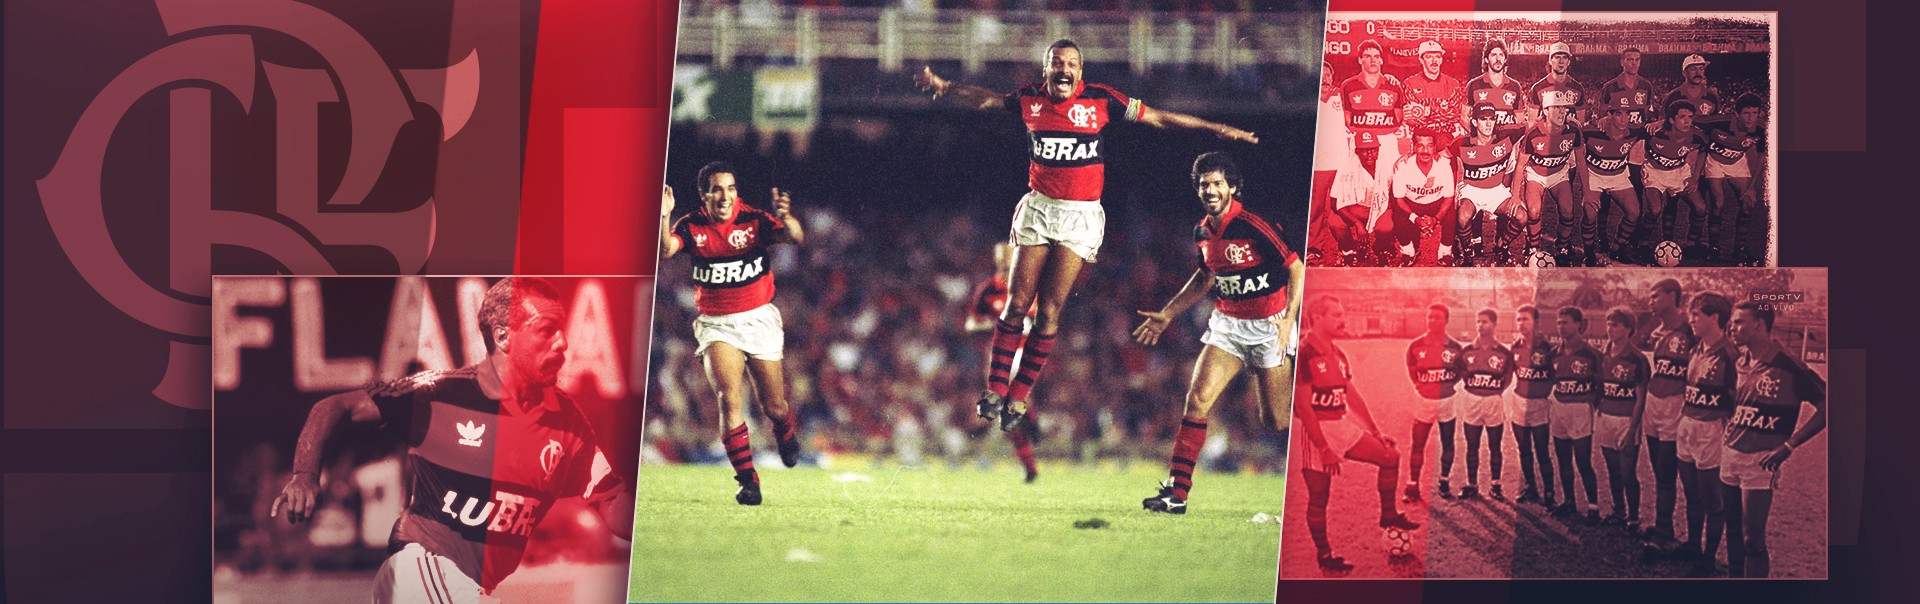 Título do Flamengo no Brasileiro de 92 completa 30 anos